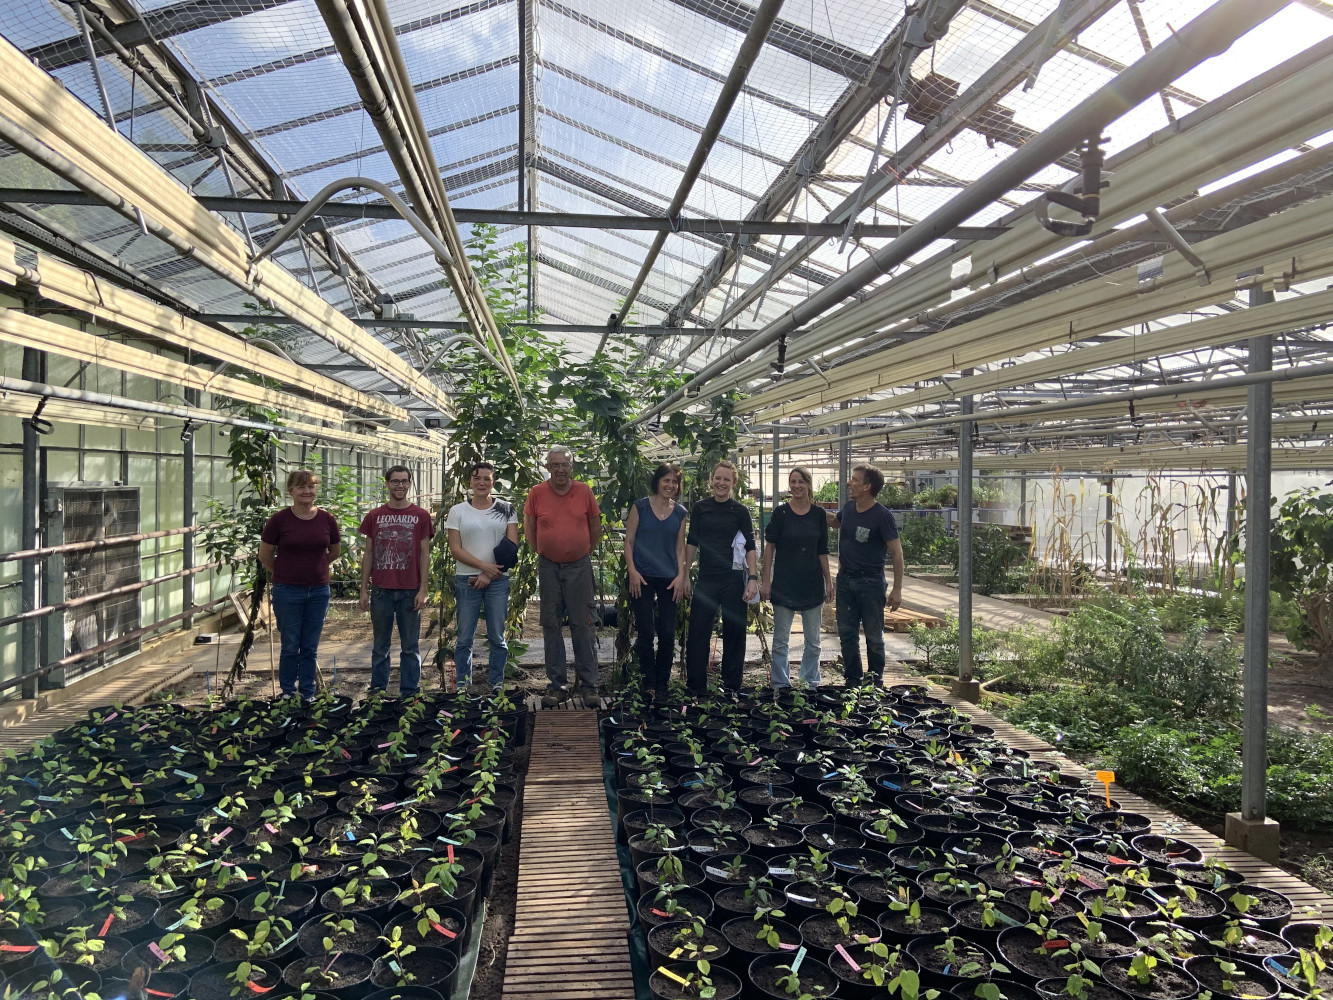 Plantules de pommiers sauvages (Malus sylvestris) en serre avec une partie des collaborateurs associés au projet attendant leur transfert à l'automne 2020!